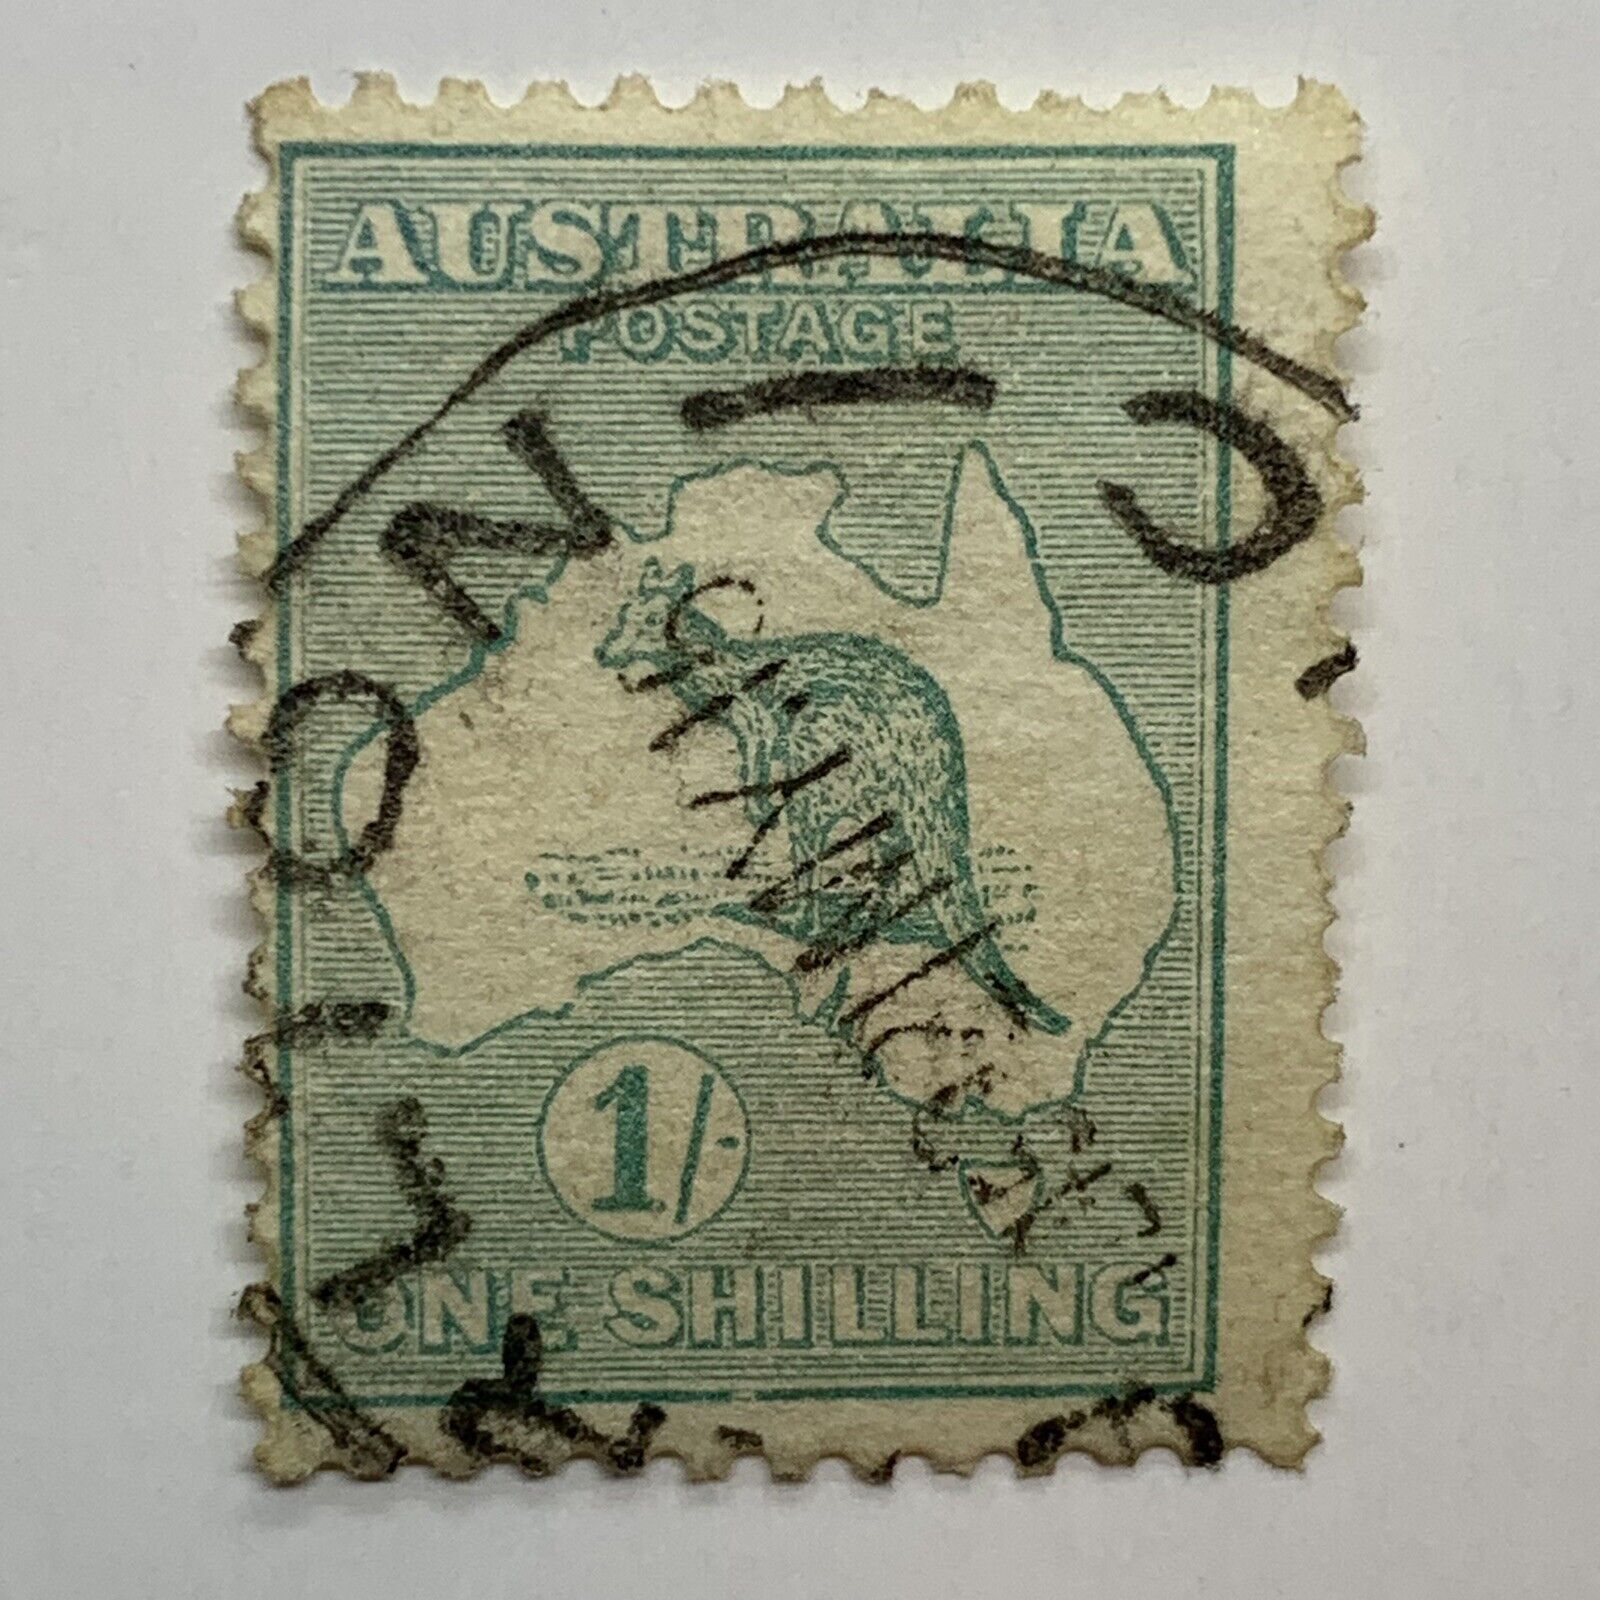 1913 Australia Kangaroo 1s Stamp #10 With Carlton Victoria Son Cancel